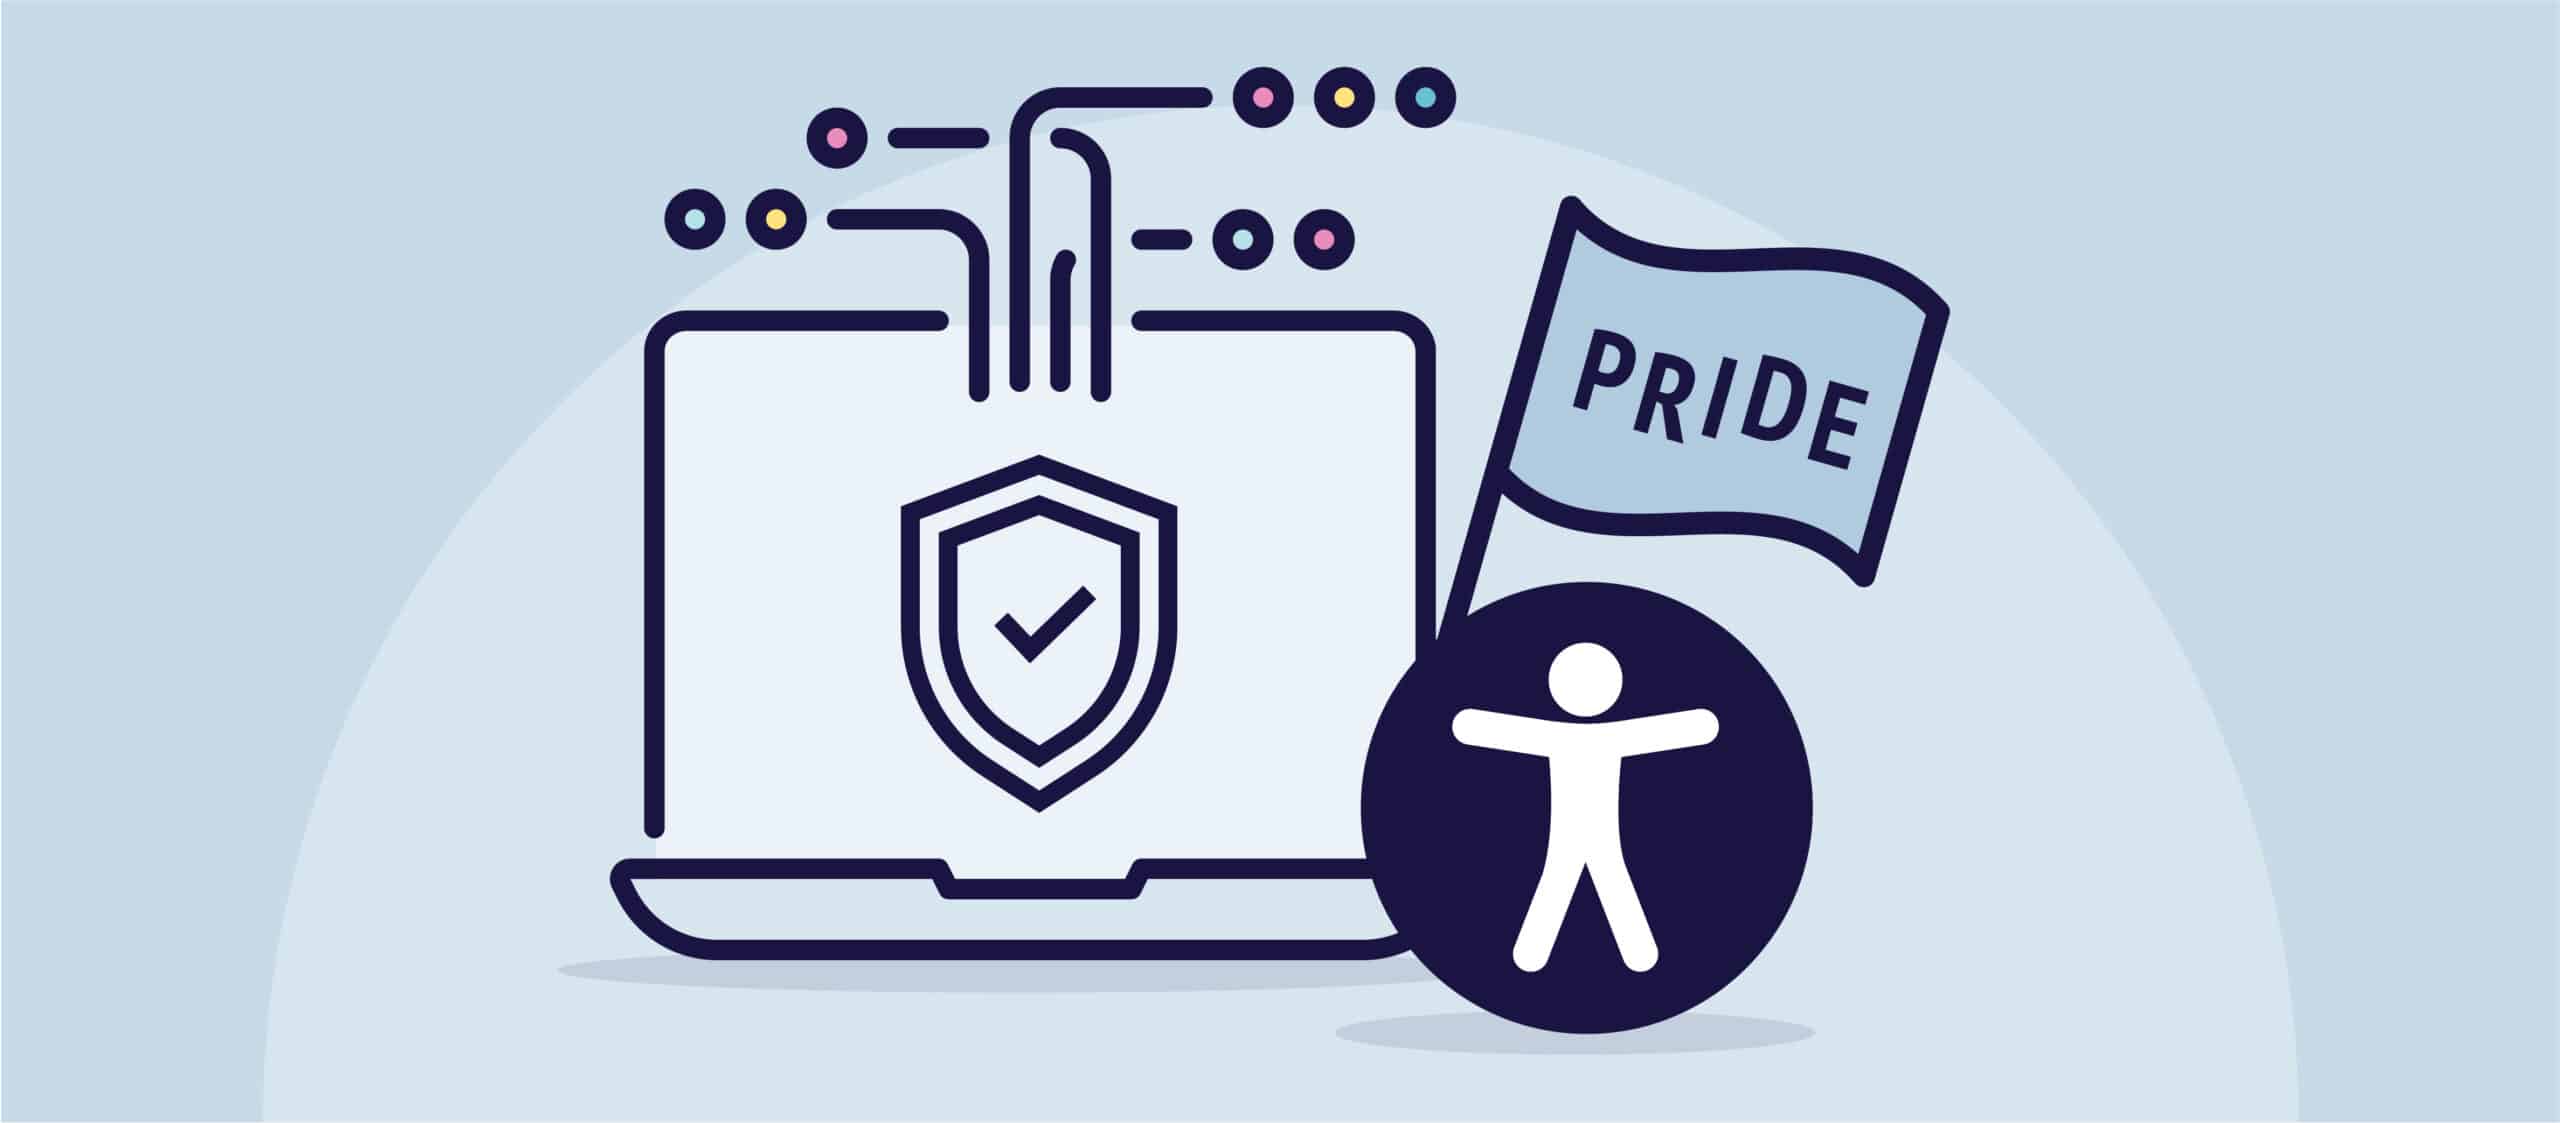 L'illustration d'un ordinateur portable portant le symbole de l'accessibilité universelle à sa droite brandit un drapeau sur lequel on peut lire "Pride" (fierté).